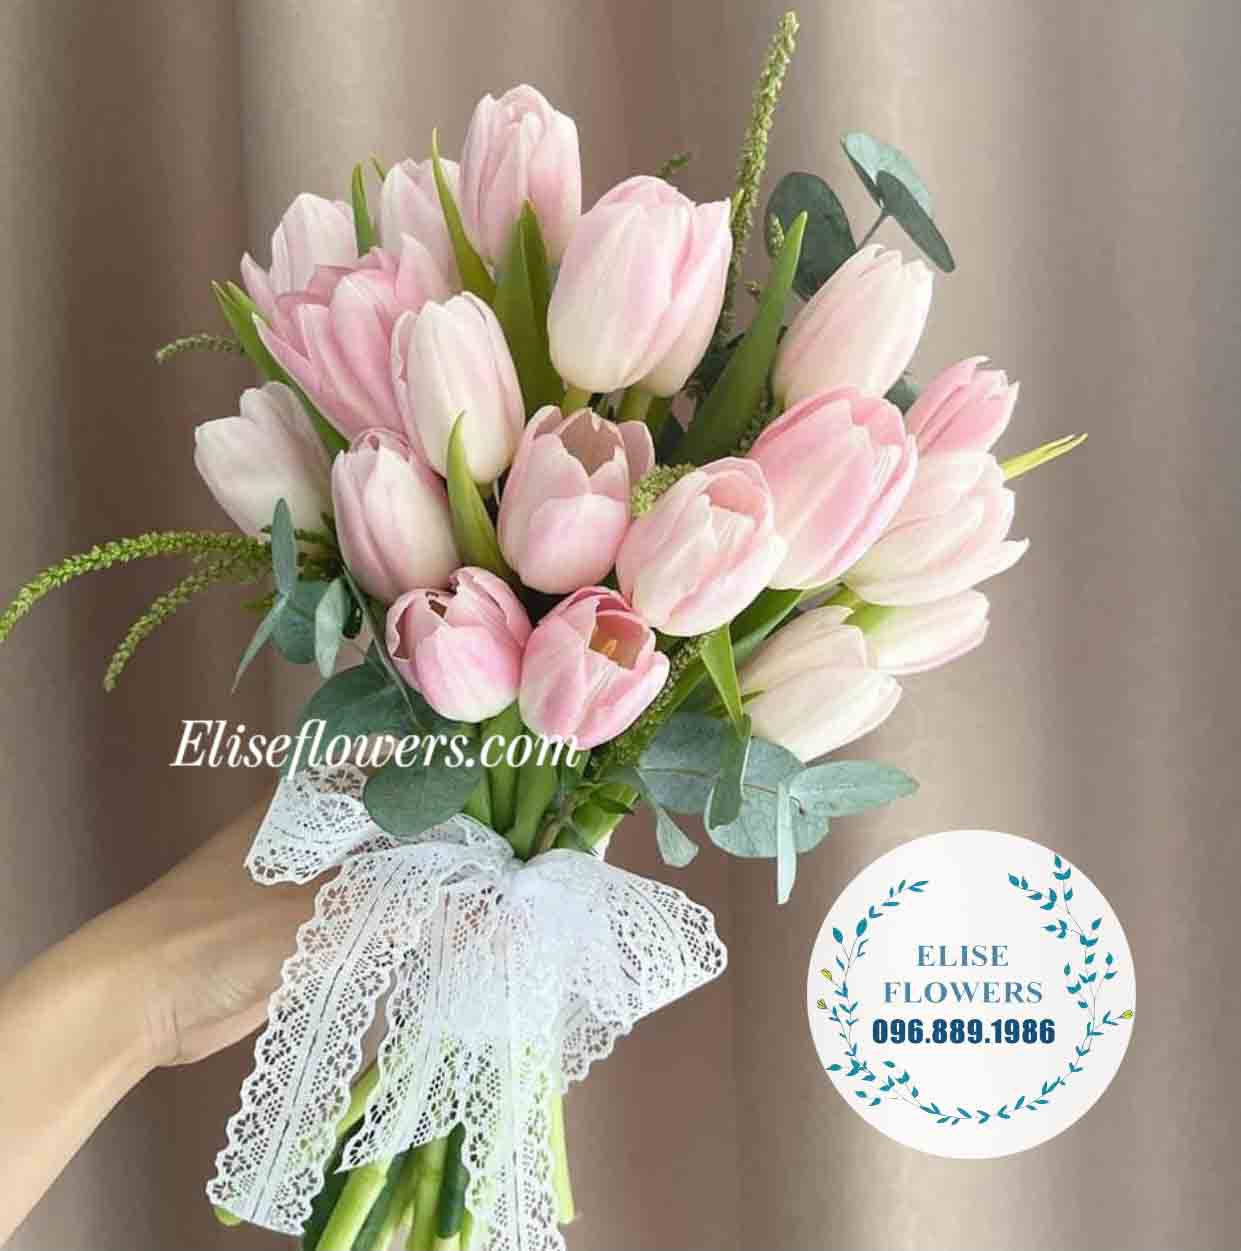 Hoa cưới tulip hồng ý nghĩa tại Cầu Giấy, Hà Nội | Hoa cầm tay cô dâu đẹp tại Eliseflowers 